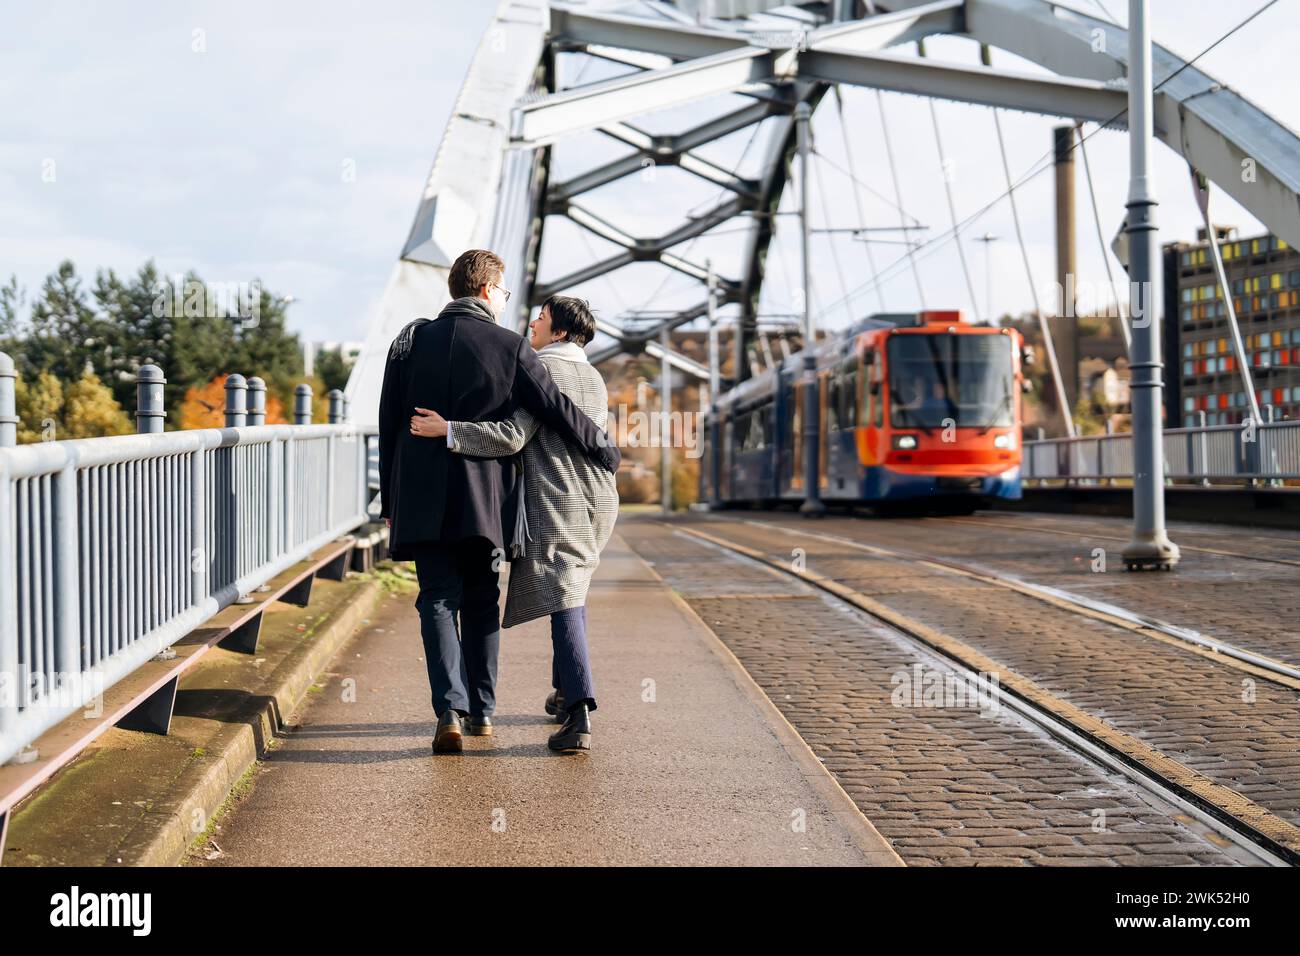 Gutaussehender Mann und schöne Frau umarmen sich gegenseitig, während sie durch die Stadt laufen, eine Brücke überqueren, Spaß haben, Lifestyle-Foto Stockfoto